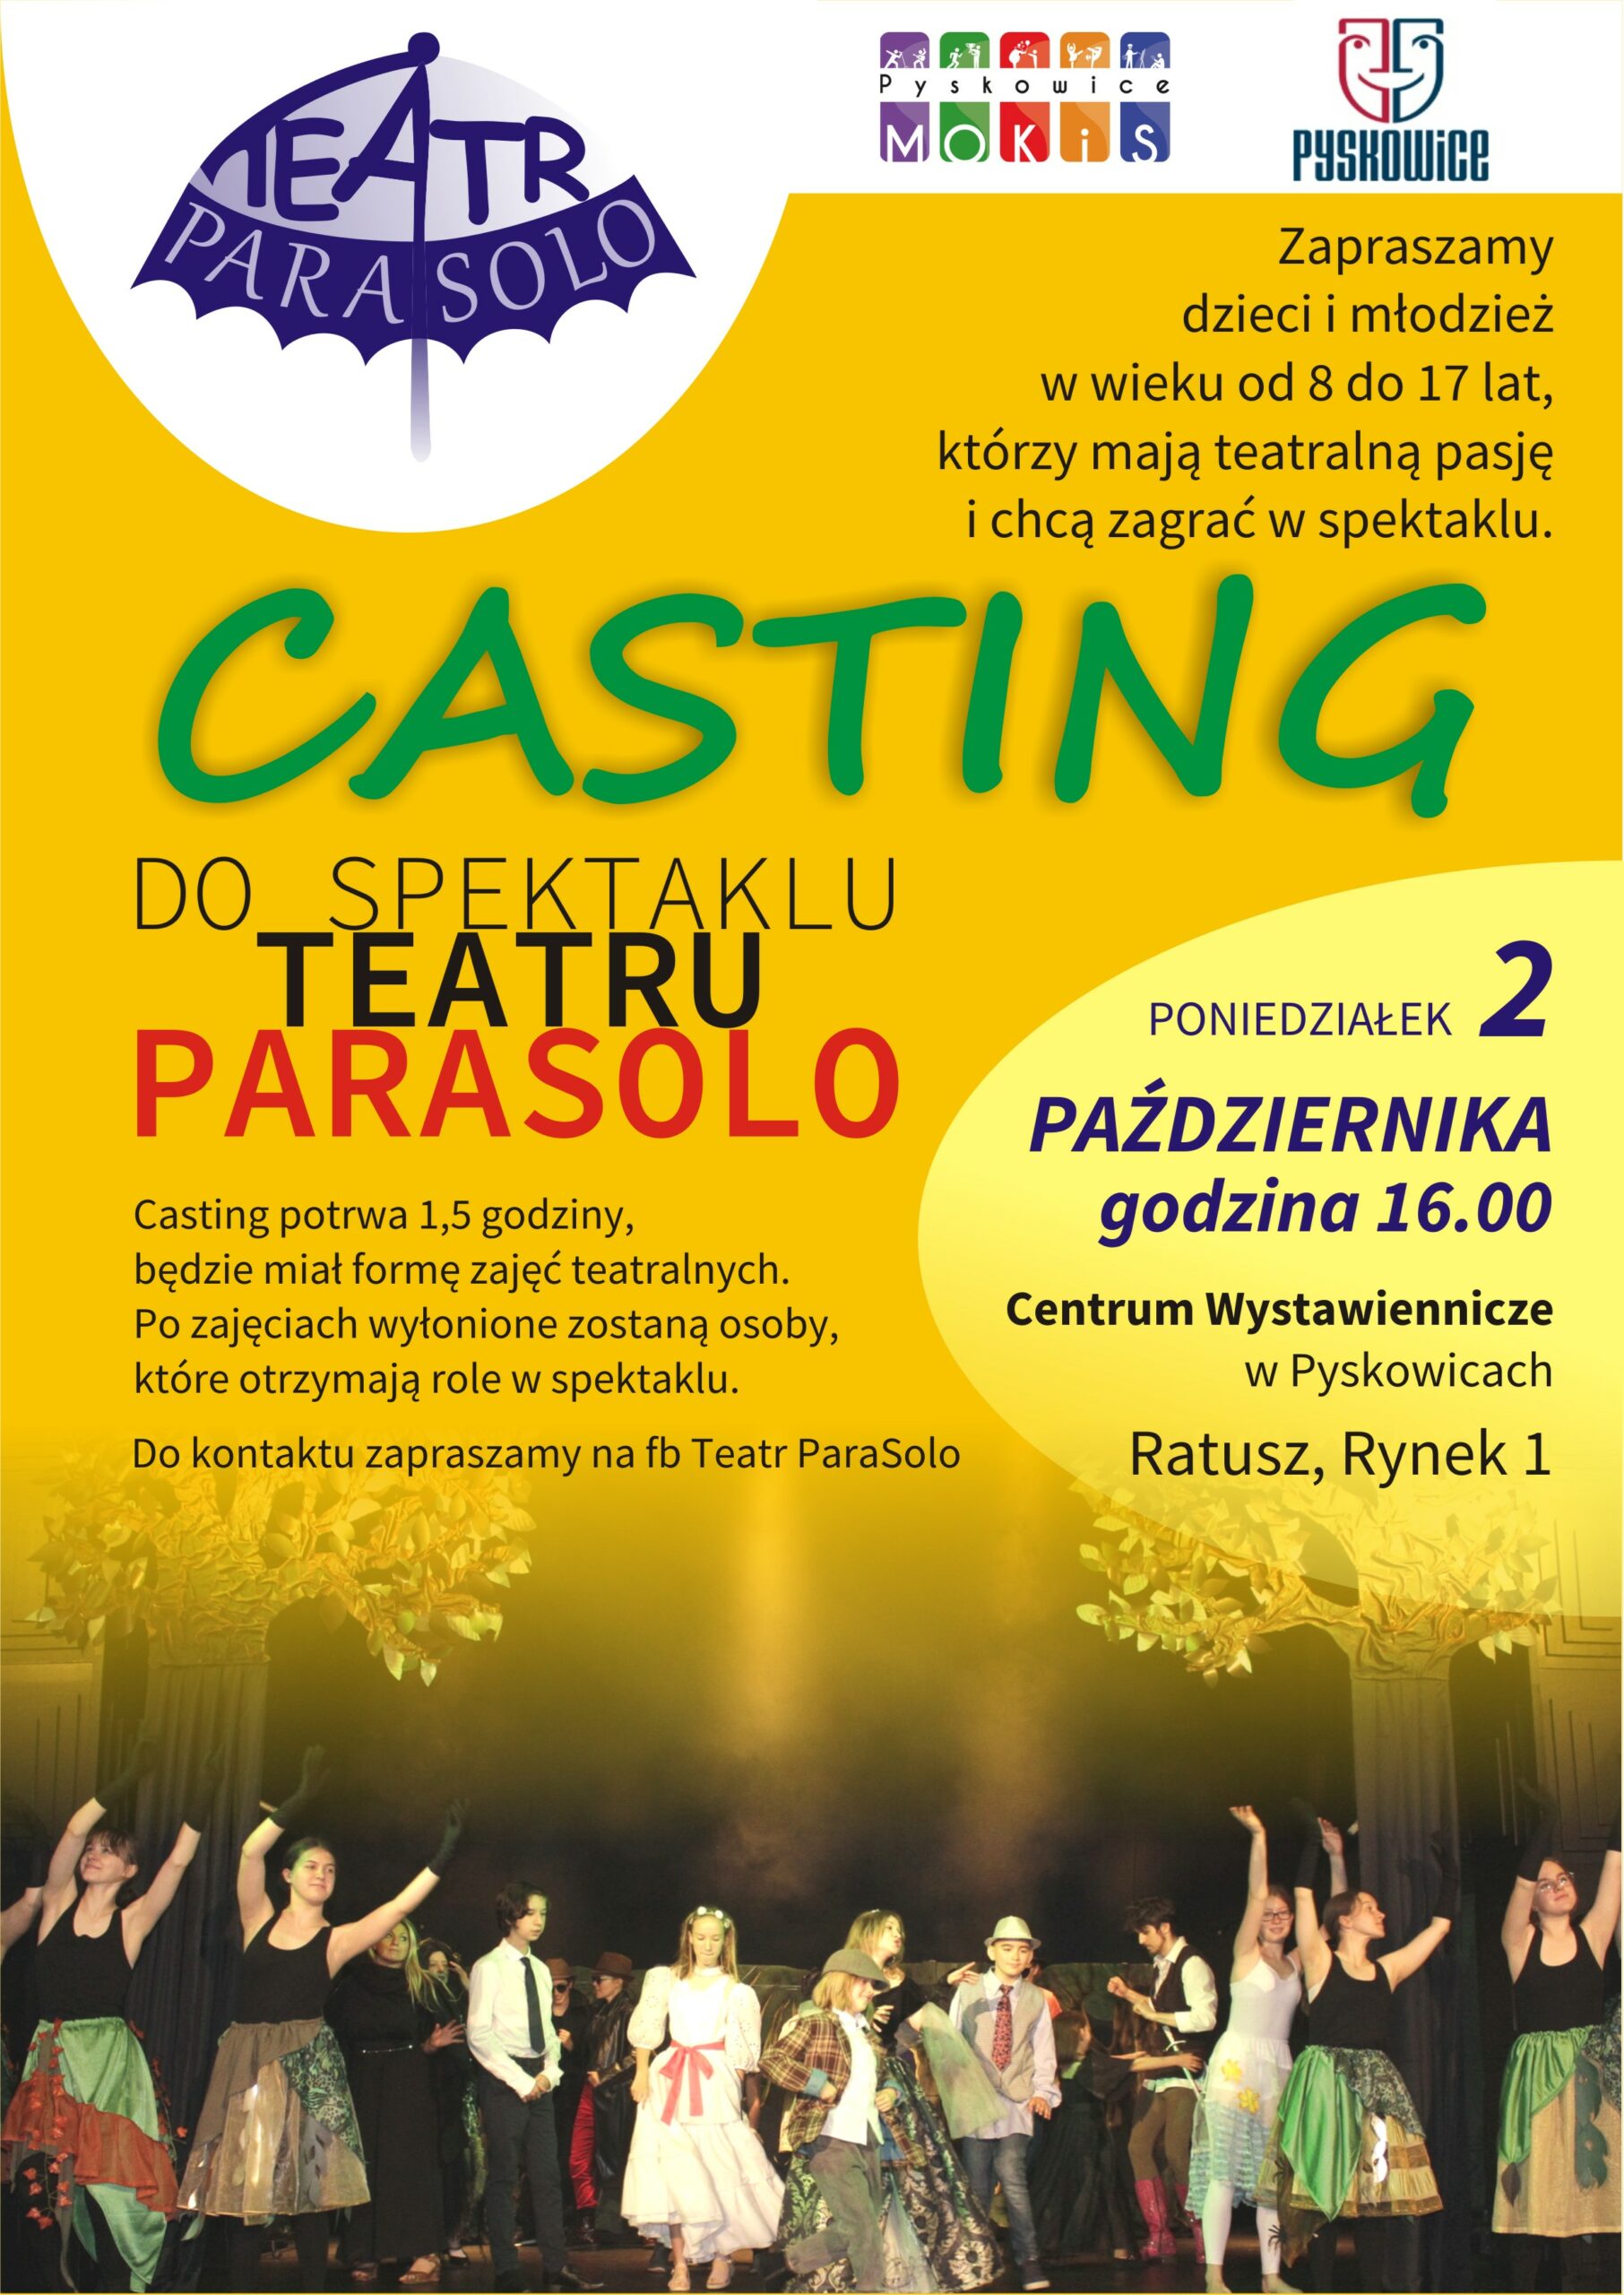 Plakat promujący Casting do spektaklu teatru ParaSolo